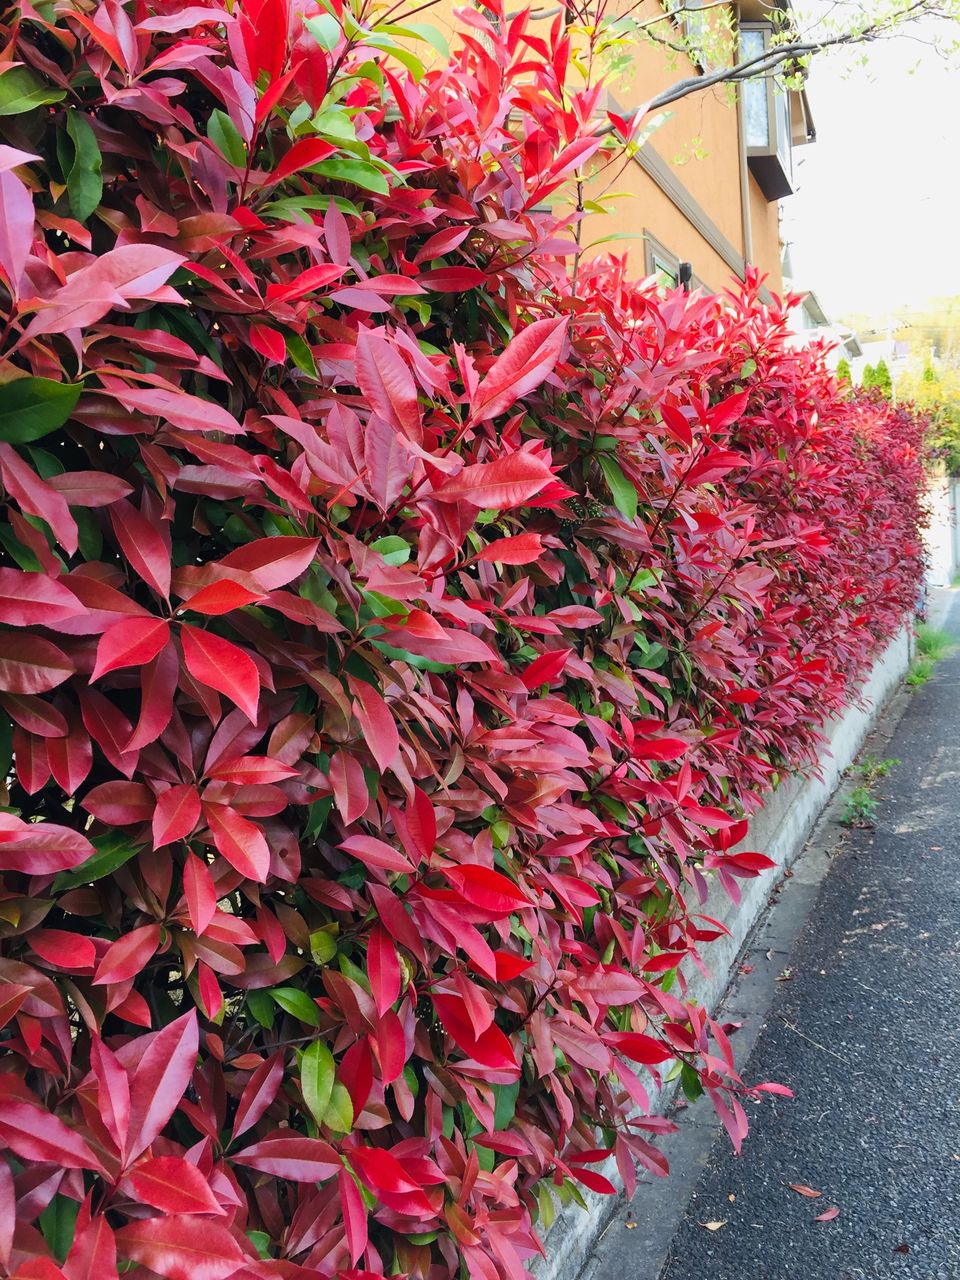 春紅葉のように美しい生け垣 すっとこどっこい 横浜再び